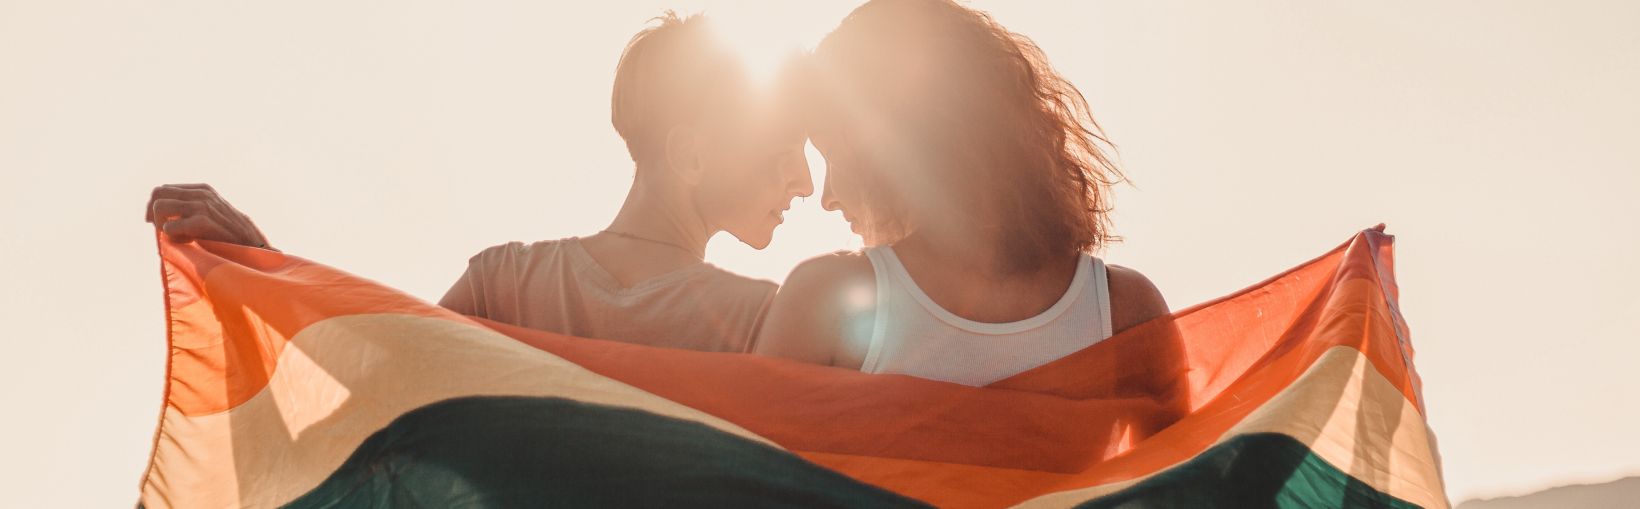 Graži jauna lesbiečių pora su vaivorykštės vėliava, švelniai ir meiliai apsikabinusi – lygios teisės LGBT bendruomenei.